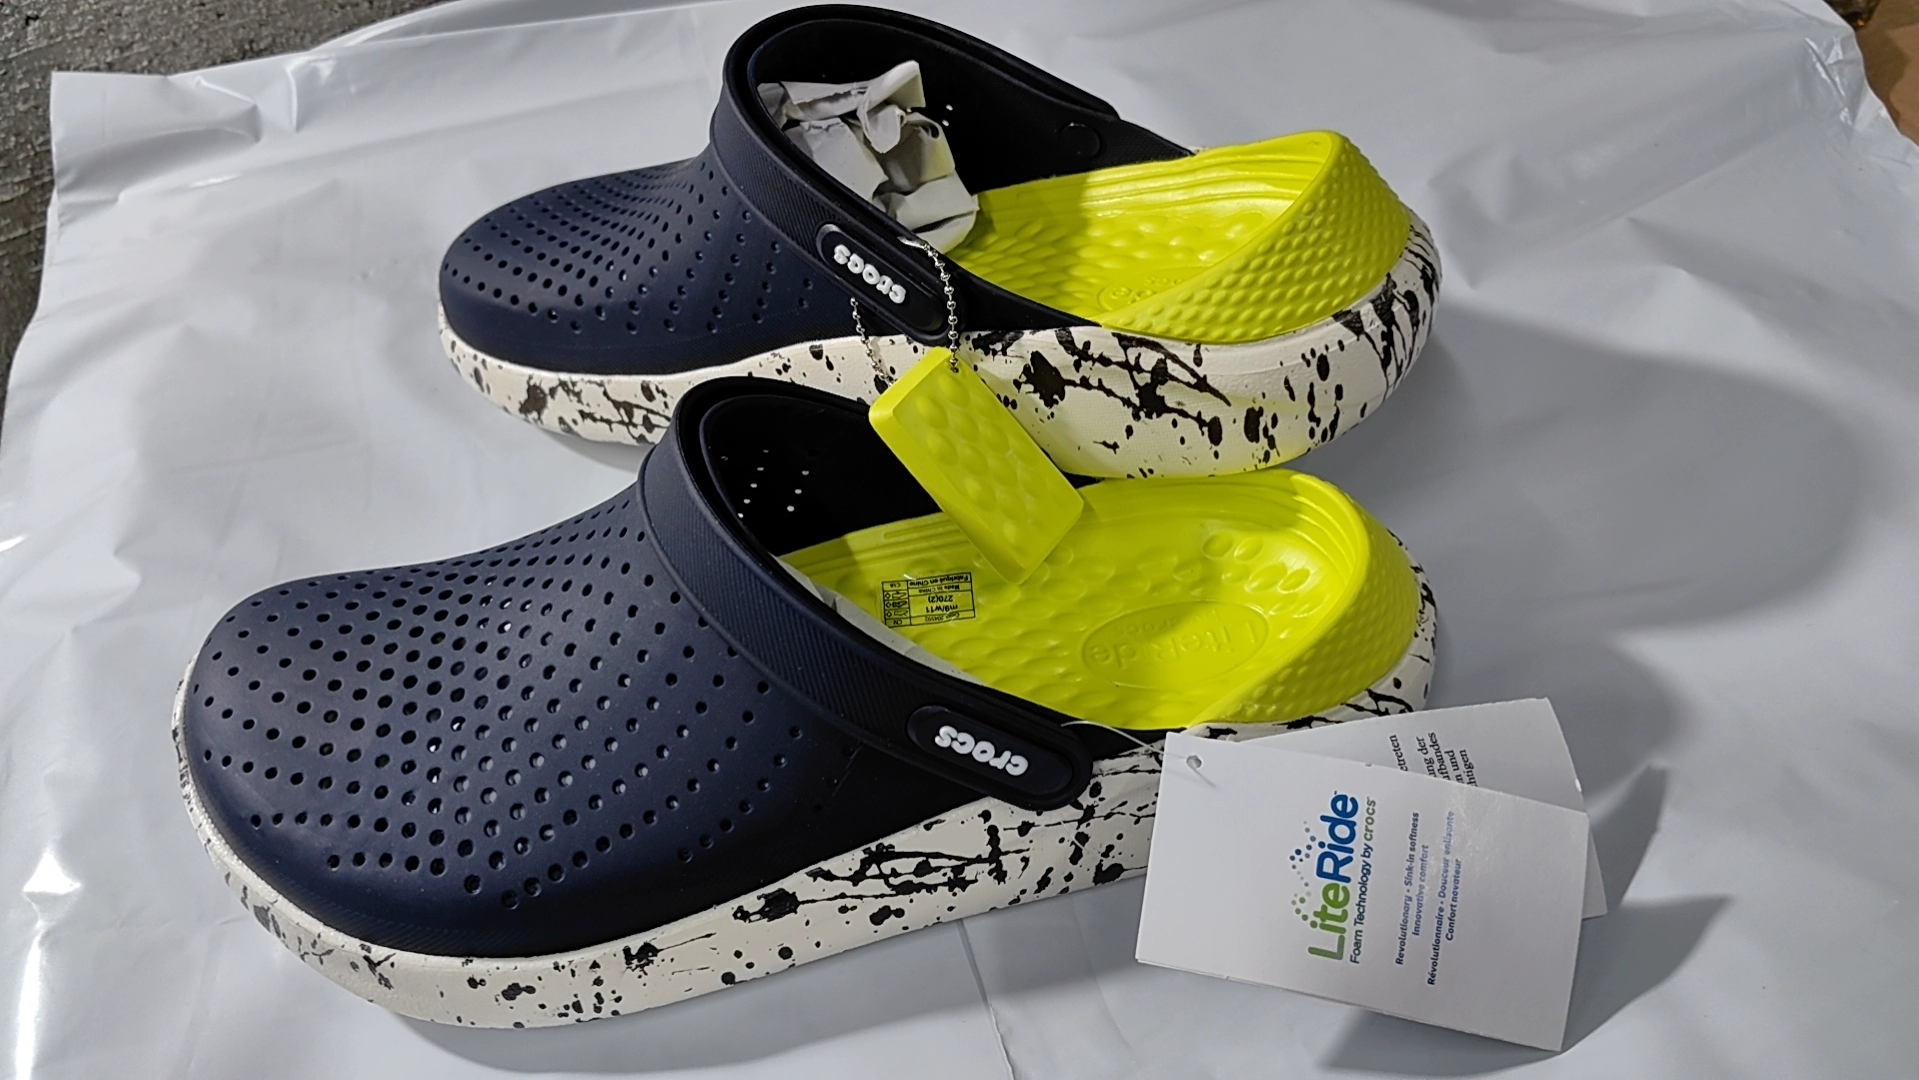 Mùa Hè Crocs Nam Nữ Cặp Đôi LiteRide Crocs Giày Đi Biển Unisex Ngụy Trang Dép | 204592 